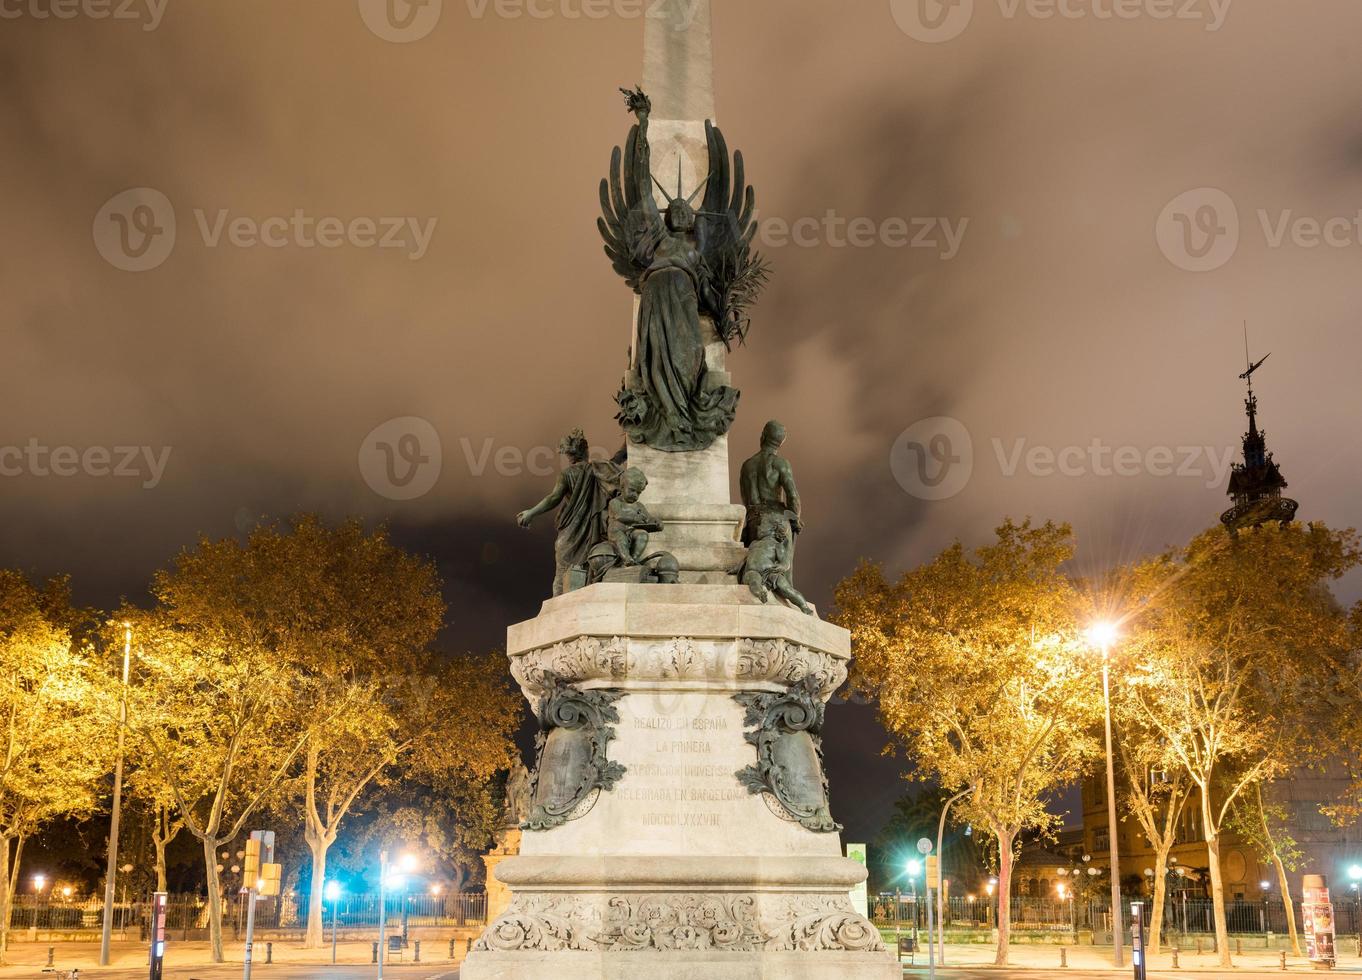 statue de francesc de paula rius i taulet sur la promenade de lluis company à barcelone, espagne la nuit. photo